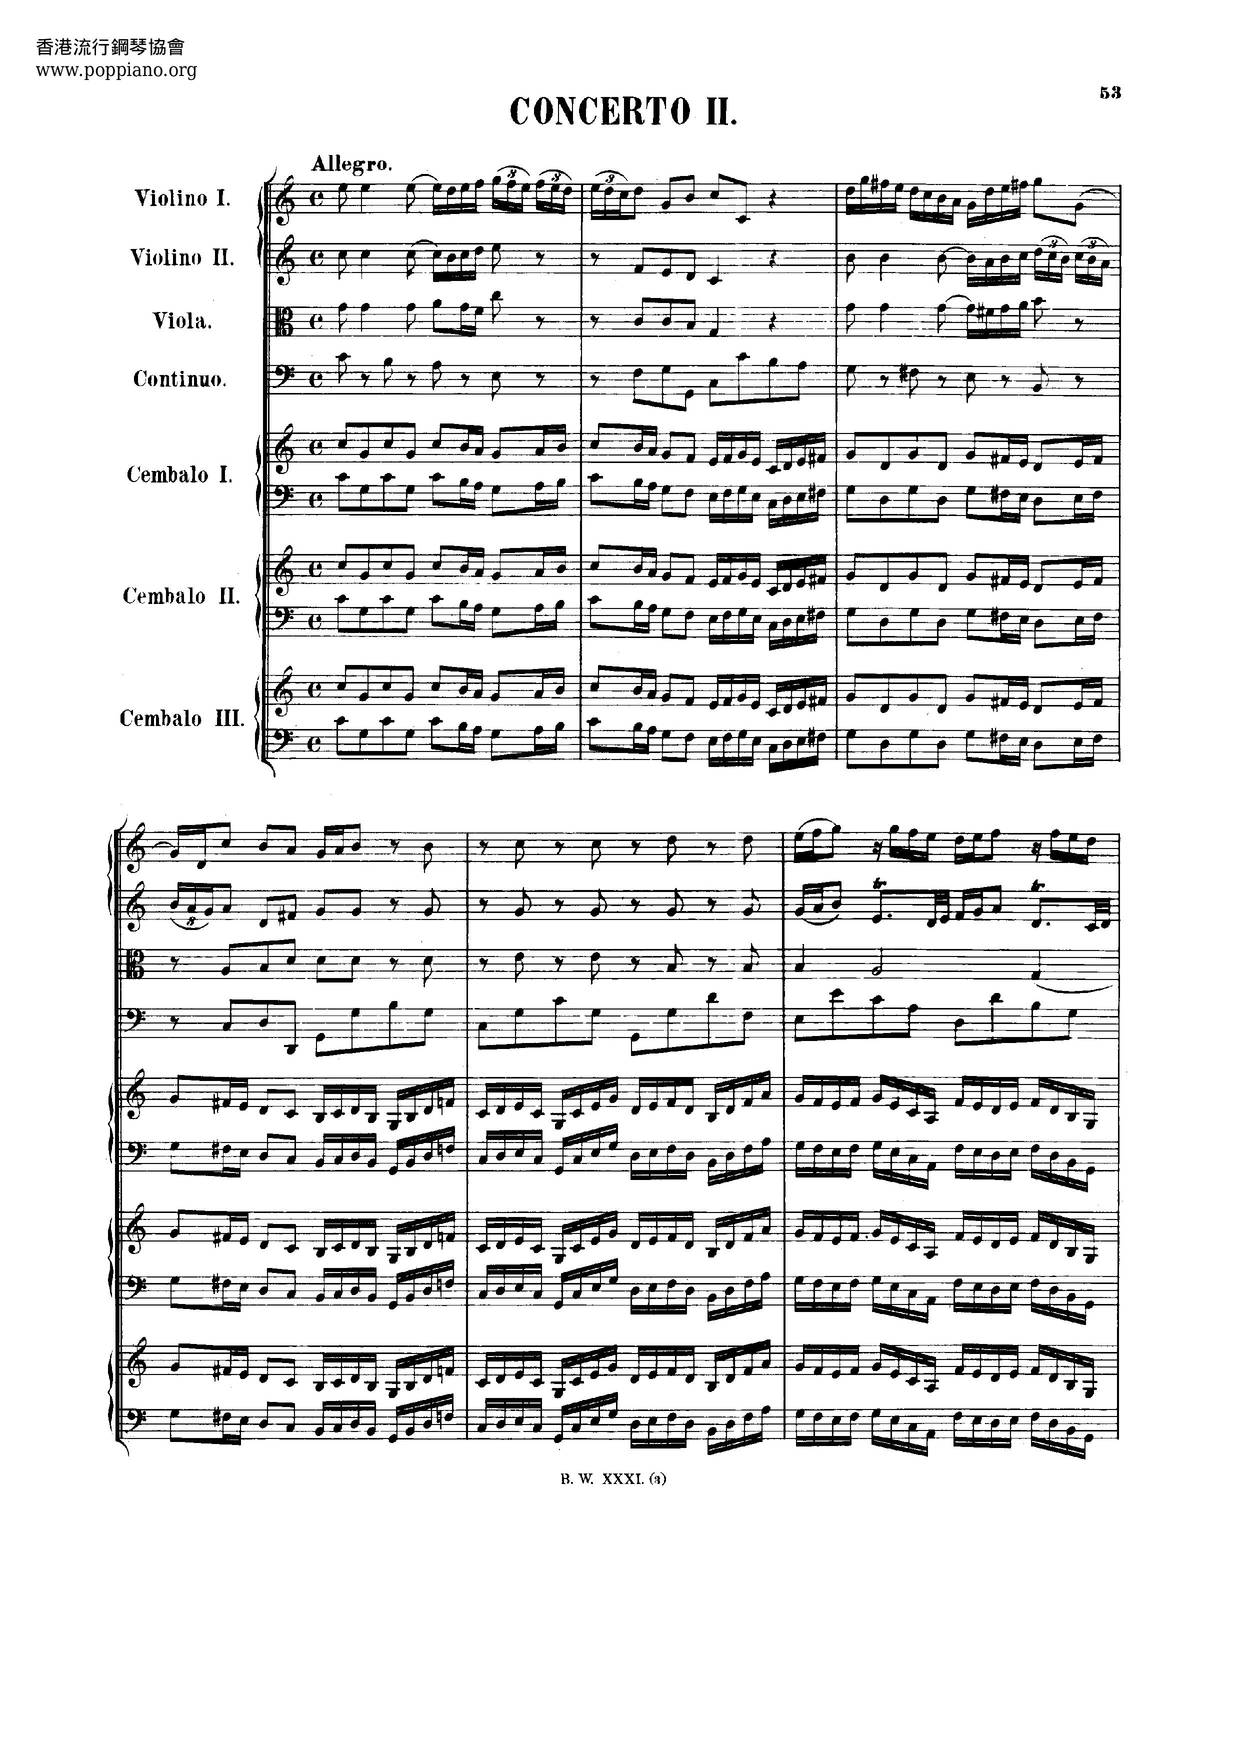 Concerto For 3 Harpsichords In C Major, BWV 1064 Score